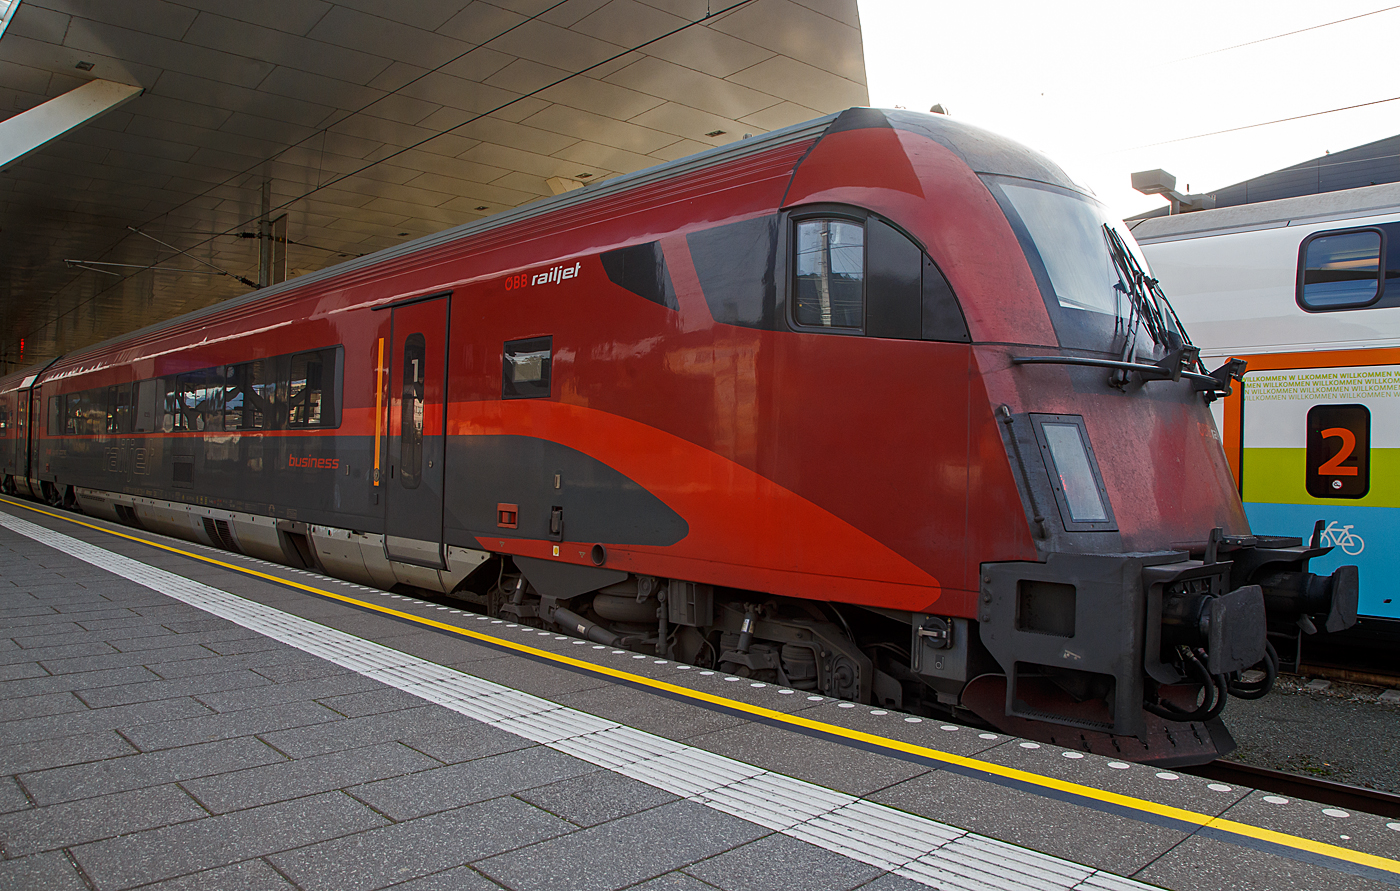 Der ÖBB-Railjet-Steuerwagen (Premium / 1. Klasse) A-ÖBB 73 81 80-90 735-9 Afmpz am 12.09.2022 im Hauptbahnhof Salzburg. 

Von diesen Wagen wurden 51Stück zwischen 2008 und 2014 von Siemens in Wien (ehemals SGP - Simmering-Graz-Pauker AG) gebaut. 

Zwischen dem Großraumabteil (11 Sitzplätzen) der First Class (1. Klasse) und den Abteilen (ges. 16 Sitzplätzen) der Business Class (1. Klasse plus) befindet sich eine kleine Küche. Die Business Class des ÖBB Railjet kann für einen Aufpreis auf ein First-Class Ticket genutzt werden.

Der Wagenkasten ist eine Schweißkonstruktion aus Profilen und Blechen (Differentialbauweise). Die Einzelteile sind mehrheitlich aus Baustahl und ferritischem rostfreien Stahl hergestellt.

Der Untergestell-Rahmen ist eine Schweißkonstruktion, bestehend aus gewalzten Stahlprofilen, Abkantprofilen und Stahlblechteilen. Der Untergestell-Rahmen bildet mit den Seitenwänden, dem Dach und den Stirnwänden eine tragende Einheit. Ein Wellblech an der Unterseite dieser Konstruktion schließt das Untergestell ab. 

Fahrwerk          
Die Drehgestellfamilie SF400, luftgefederte Laufdrehgestelle, wurde für den Einsatz in lokbespannten Reisezügen im Wendezugbetrieb entwickelt. Optimales Laufverhalten im Hinblick auf Stabilität, Komfort und Entgleisungssicherheit sowie hohe Zuverlässigkeit und niedrige Betriebskosten sind Merkmale dieses Drehgestelltyps.   
Das gegenständliche Drehgestell SF400 ÖBB-railjet ist ein Drehgestell mit drei Bremsscheiben, Magnetschienenbremse (außer Afmpz am WE 2) und ist lauf- und bremstechnisch abgestimmt auf eine max. Betriebsgeschwindigkeit von 230 km/h.                      

Das Drehgestell besteht aus den folgenden Hauptkomponenten:
- Drehgestellrahmen
- Laufradsatz, Radsatzlager, Radsatzführung/Primärfeder
- Luftfedersystem, Querfeder, Drehdämpfer, Wankstabilisator
- Längsmitnahme, Querspielbegrenzung, Drehzapfen
- Scheibenbremse, Parkbremse (Federspeicherbremse), MG-Bremse
- Zugsicherung (Antennen, nur Steuerwagen Afmpz)
- Sandung (nur Steuerwagen Afmpz), Spurkranzschmierung
(nur Steuerwagen Afmpz)
- Druckluftverrohrung, Verkabelung, Erdungskontakt

TECHNISCHE DATEN (Afmpz 8090.7): 
Spurweite 1.435 mm
Länge über Puffer: 26.850 mm
Wagenkastenlänge: 26.409 mm 
Drehzapfenabstand: 19.000 mm 
Achsabstand im Drehgestell: 2.500 mm 
Raddurchmesser: 920 mm (neu) / 860 mm (abgenutzt)
Drehgestell: SF400
Wagenhöhe über SO: 4.050 mm
Wagenbreite: 2.825 mm
Fußbodenhöhe Abteil über SO: 1.250 mm
Lichte Weite Einstieg: 2 x 850 mm
Lichte Weite Übergang: 1.100 mm
Höchstgeschwindigkeit: 230 km/h (lauftechnisch 250 km/h möglich)
Min. Kurvenradius: 150 m
Eigengewicht: 56 t
Sitzplätze: 27 (16 Business Class, 11 First Class)
Toiletten: 1
Bremse: KE-PR-Mg (D) 
Bremsanlage: 3 Scheiben pro Achse + Mg